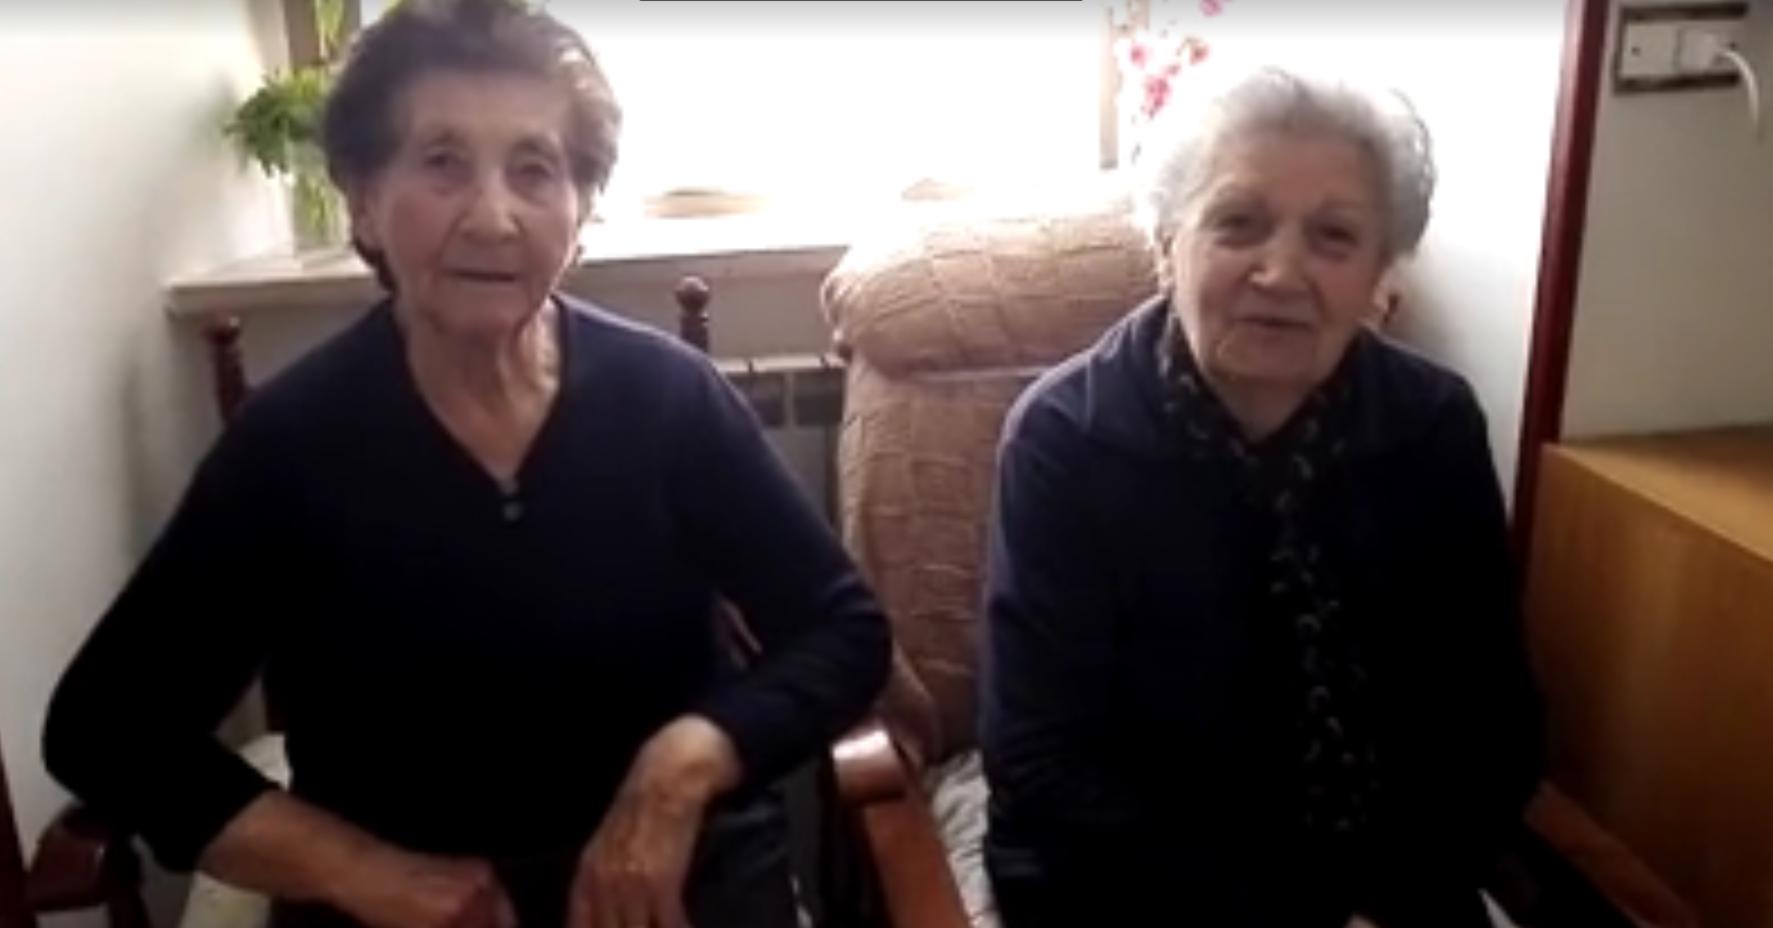 Vota 'SI' al Referendum sulle Trivelle: il video di due nonne marsicane diventa virale